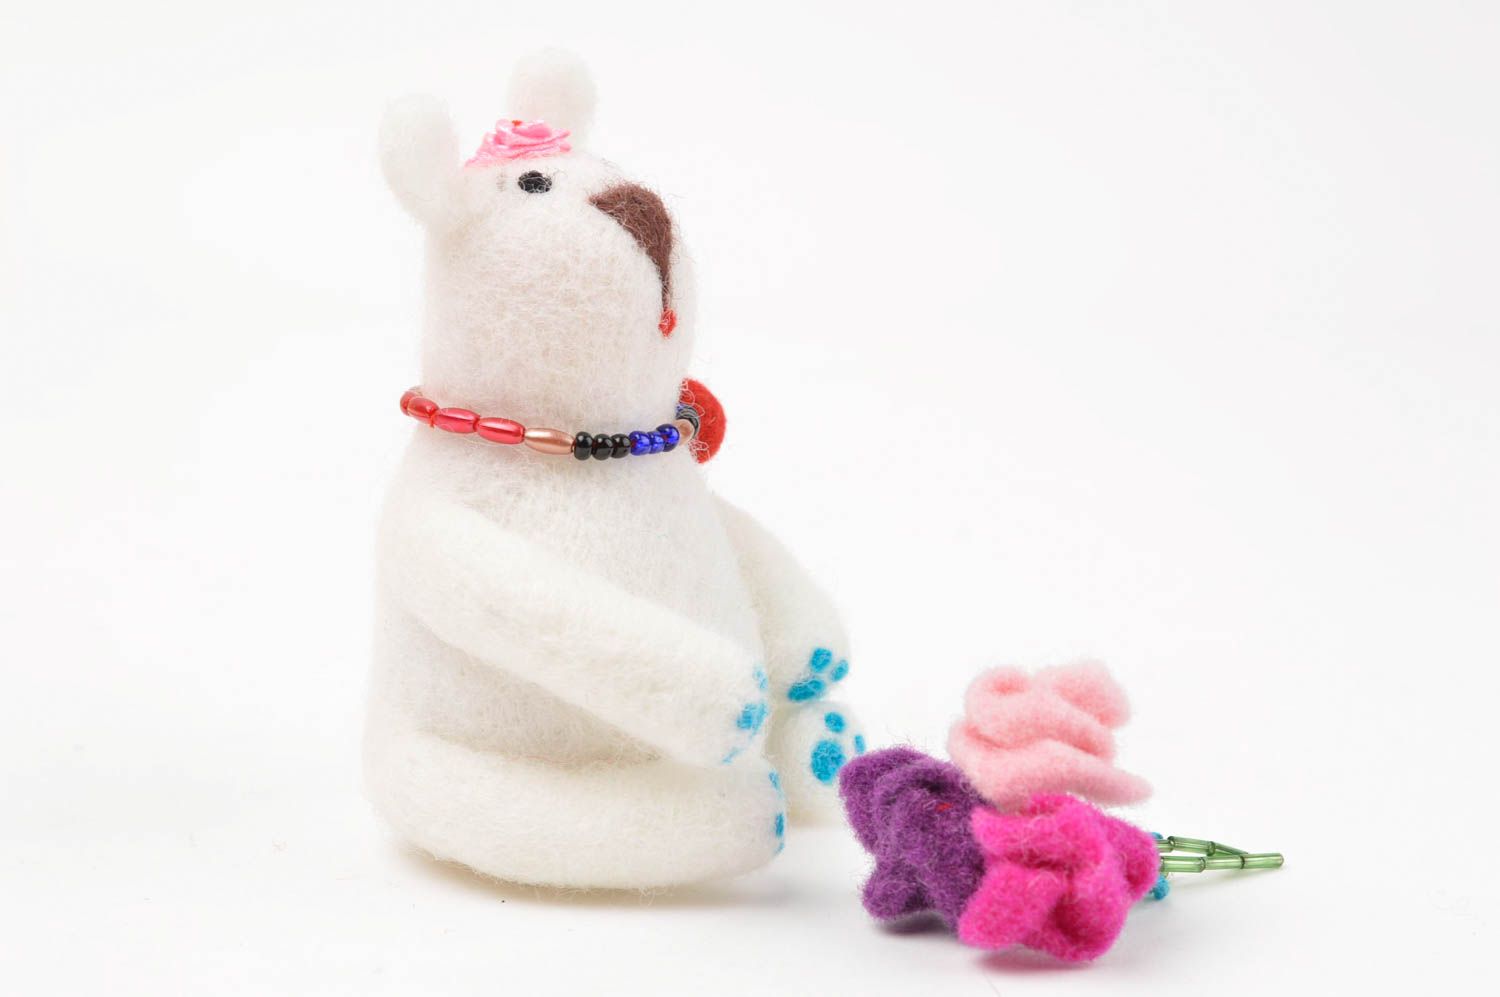 Handmade wool toy interior decor ideas soft toy for children woolen decor photo 3